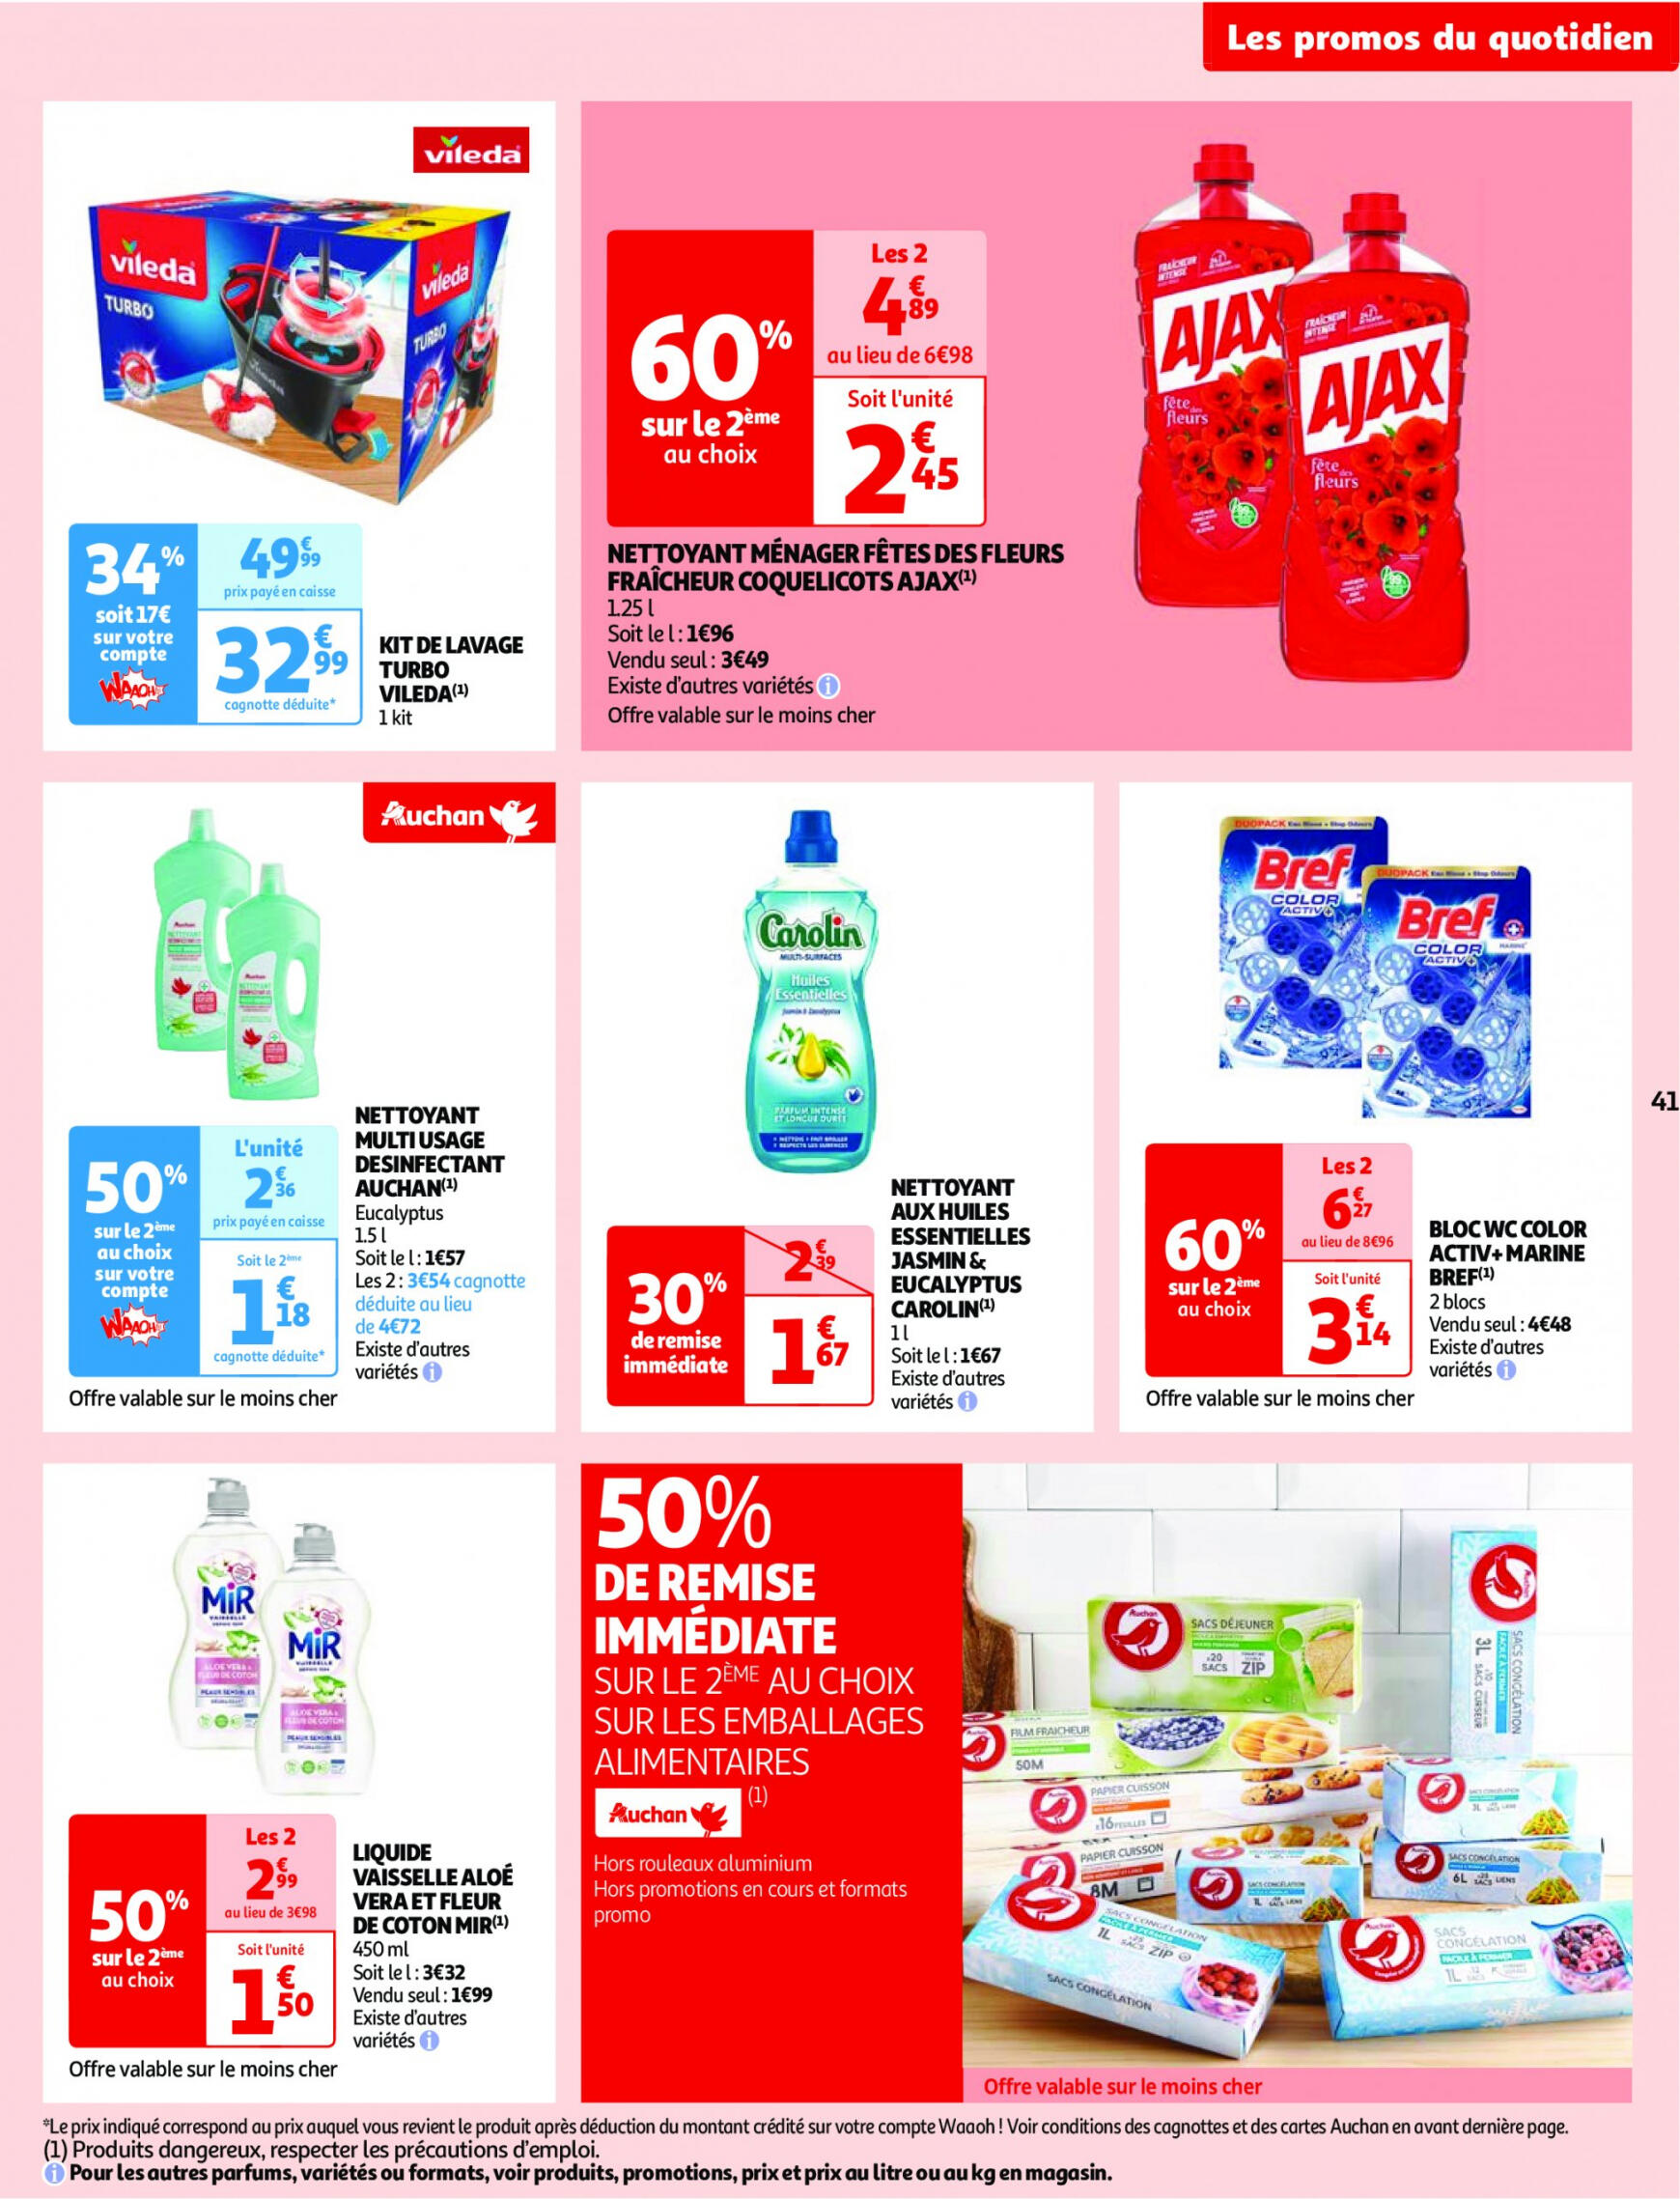 auchan - Auchan - Nos surgelés ont tout bon folder huidig 14.05. - 21.05. - page: 41